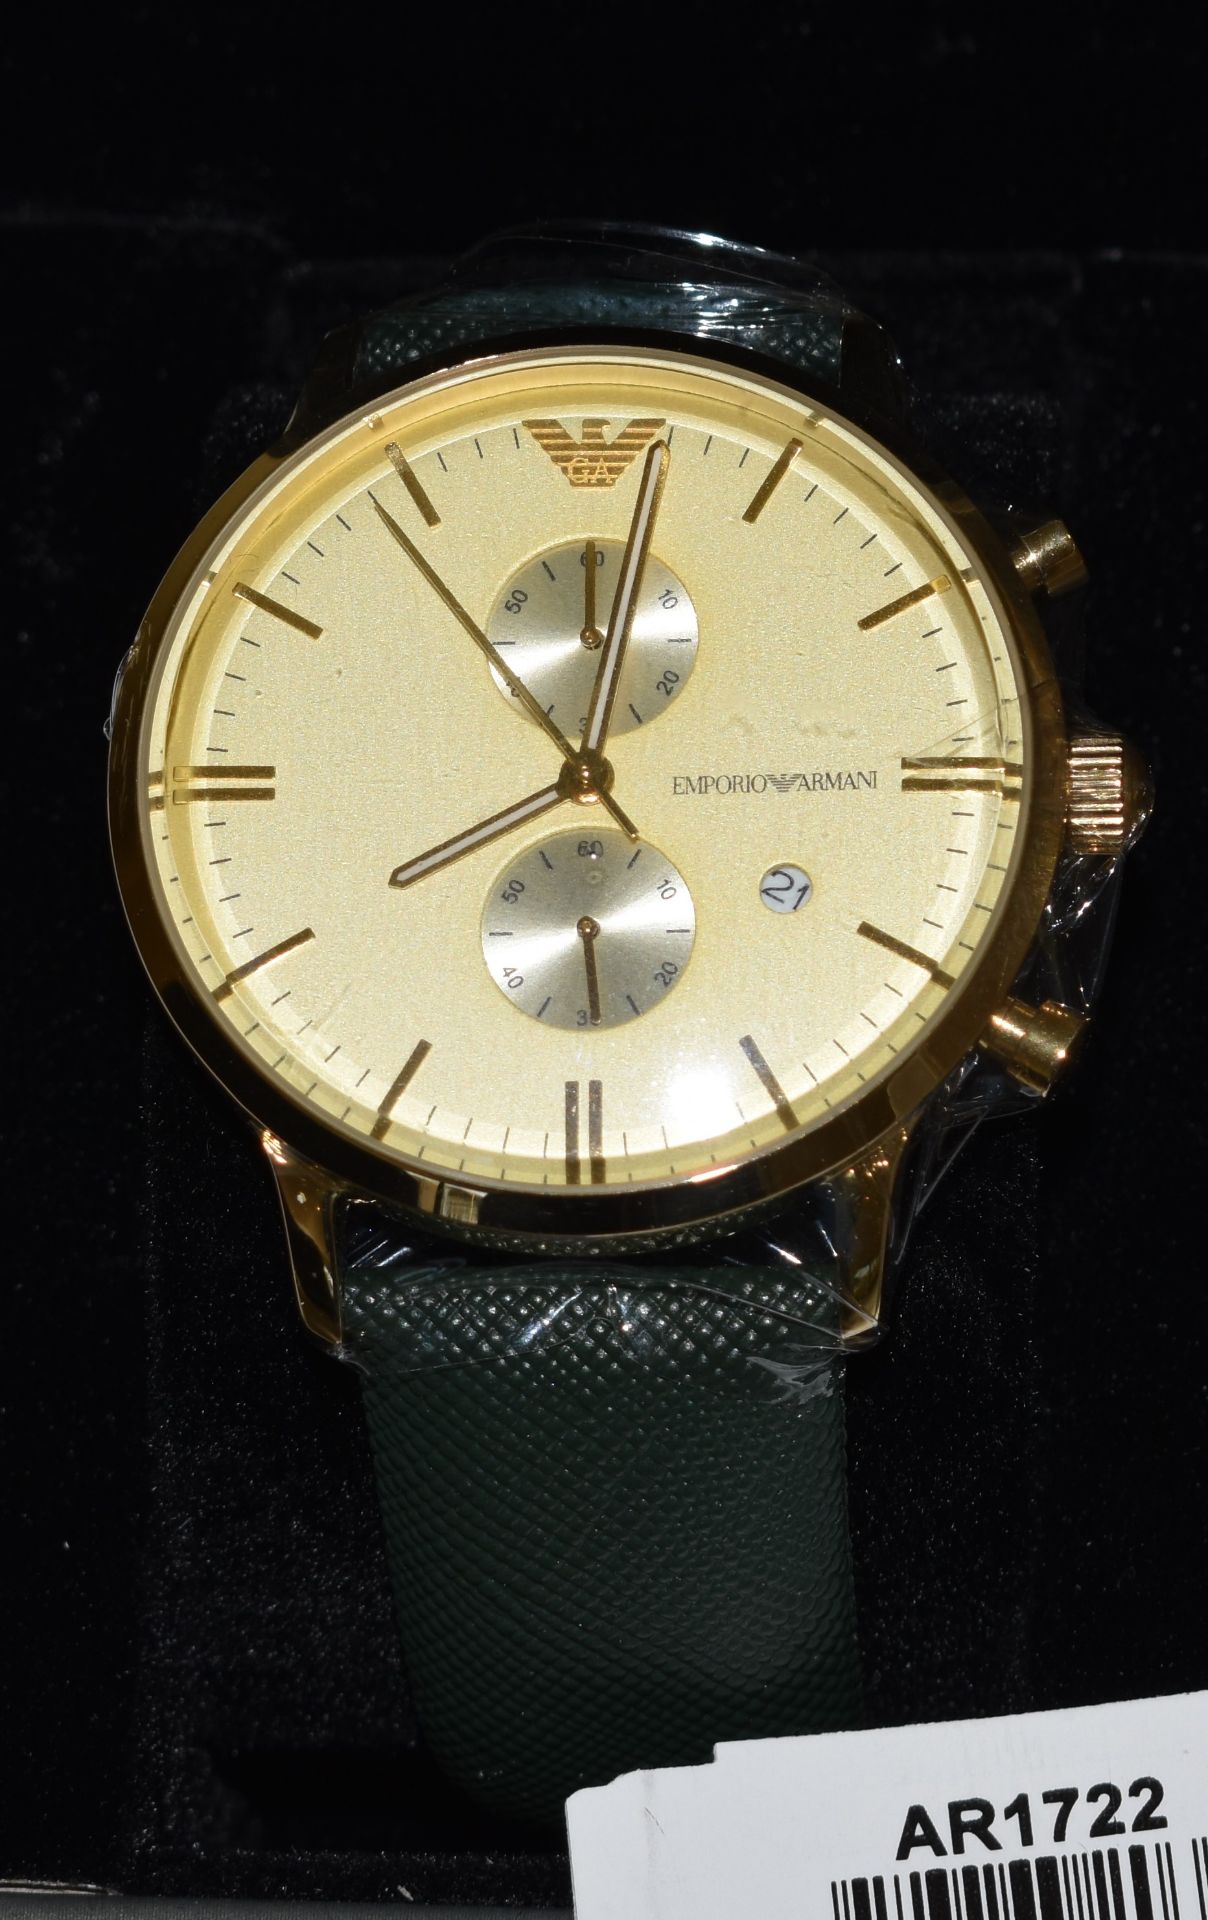 Emporio Armani AR1722 Men's watch - Image 2 of 2